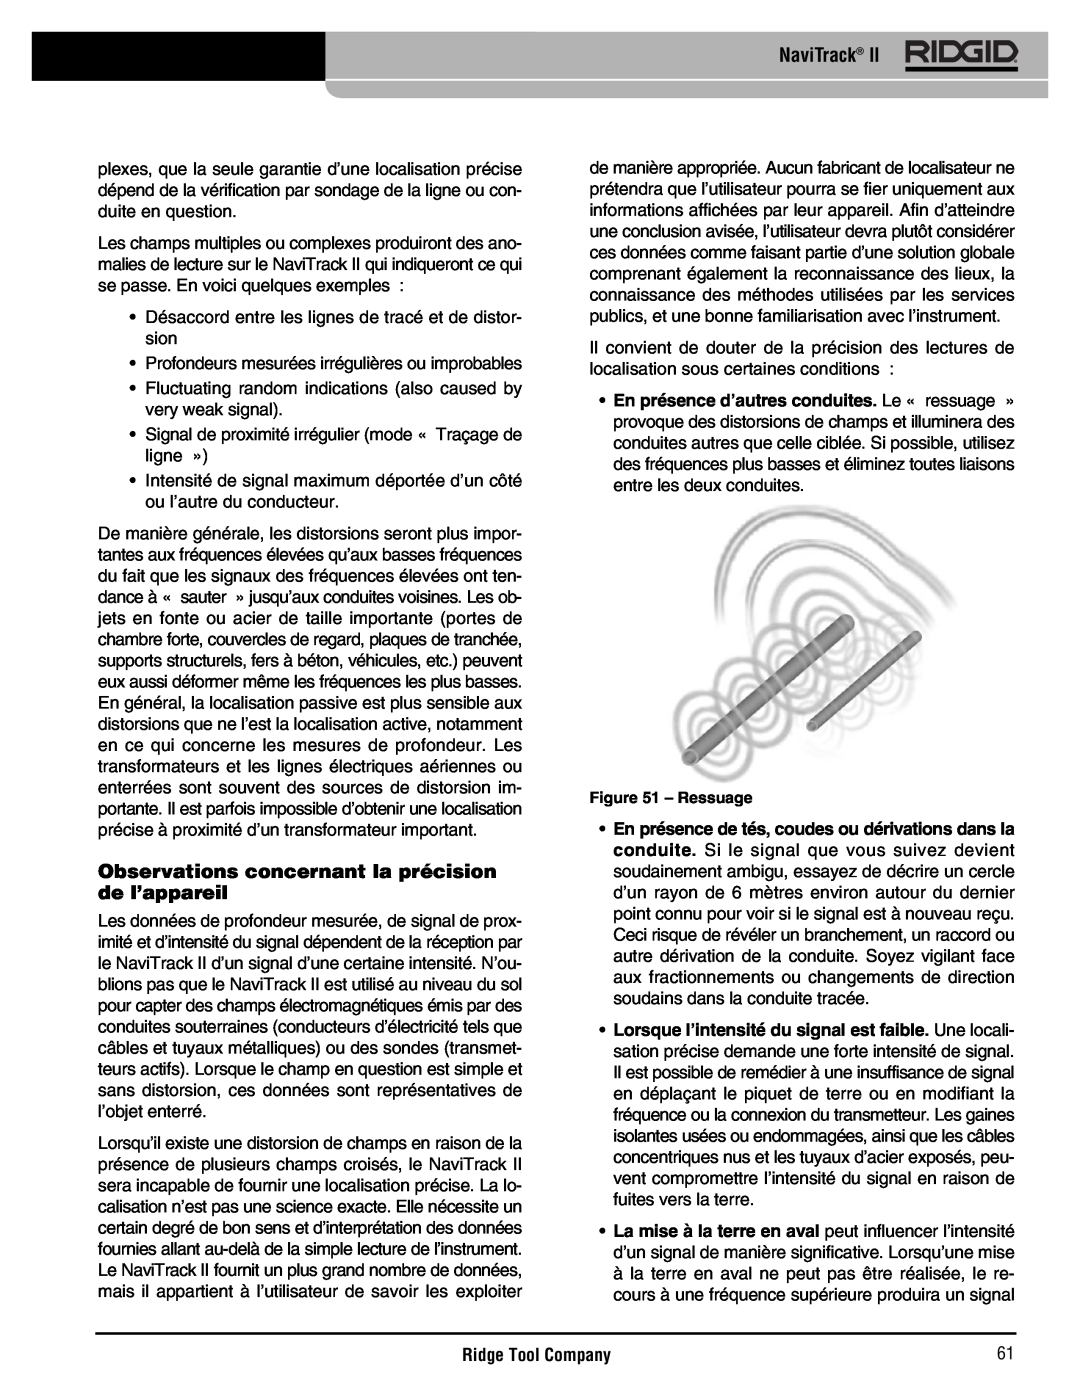 RIDGID Metal Detector manual Observations concernant la précision de l’appareil, NaviTrack, Ridge Tool Company, Ressuage 